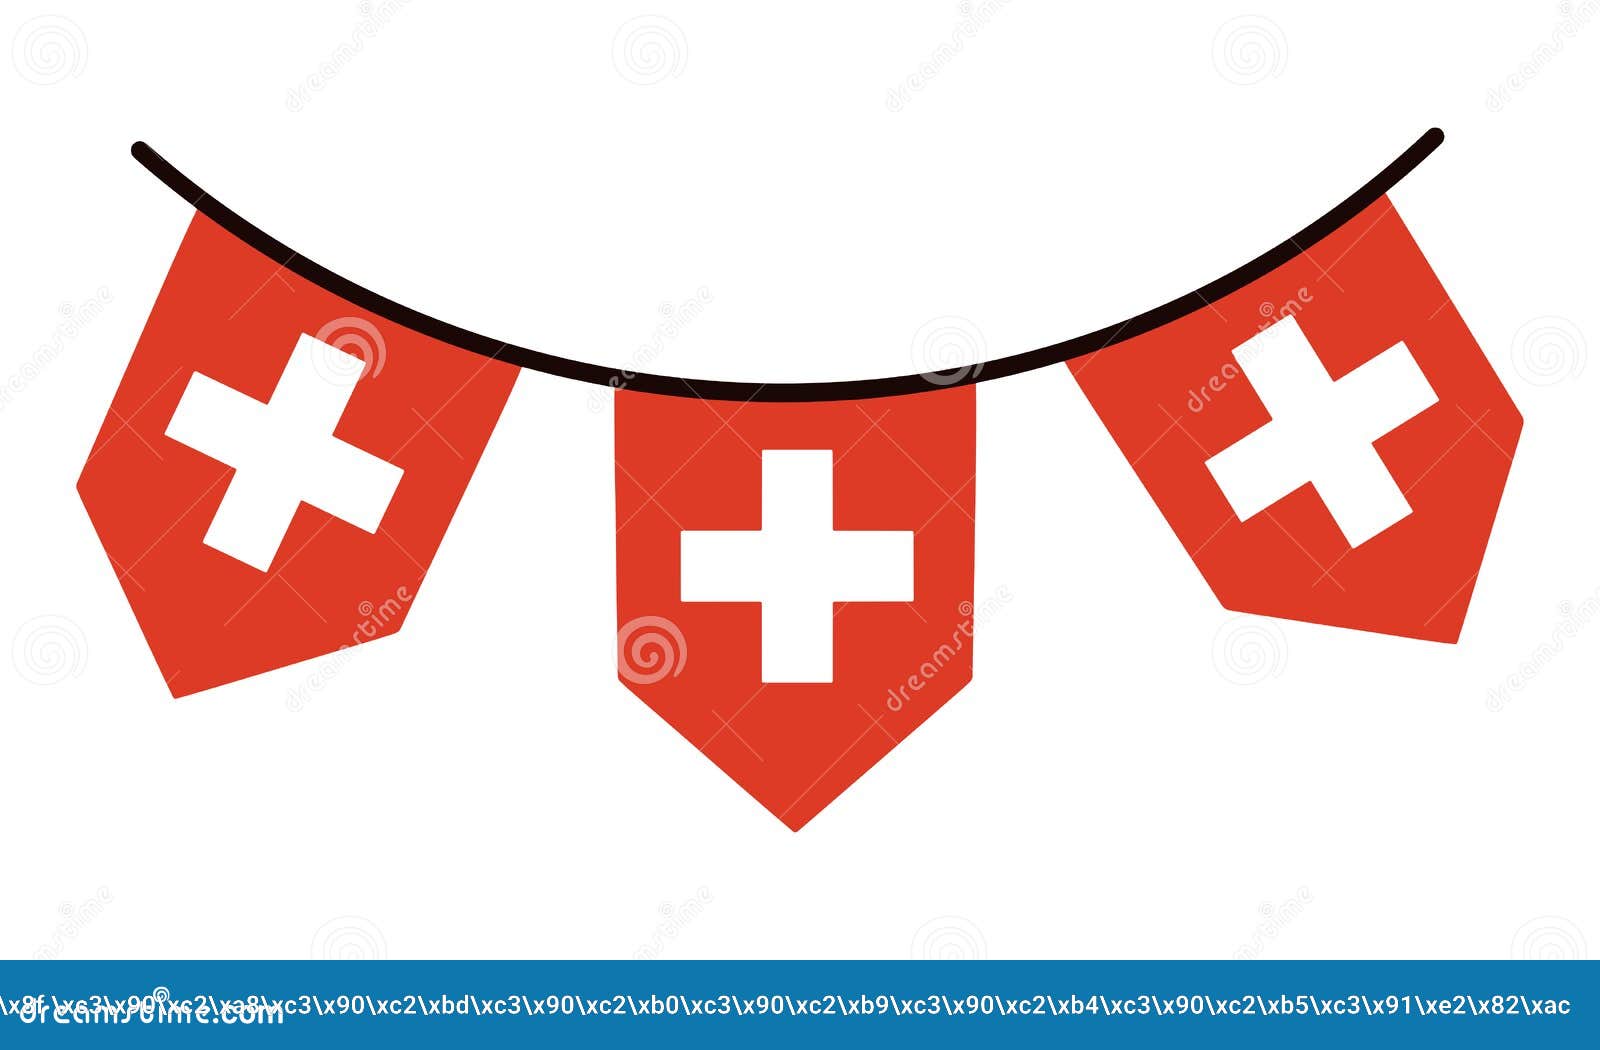 Hãy khám phá lá cờ Thụy Sĩ, với hình chữ thập trắng trên nền đỏ sẽ đem lại cho bạn niềm tự hào và tình yêu đất nước.